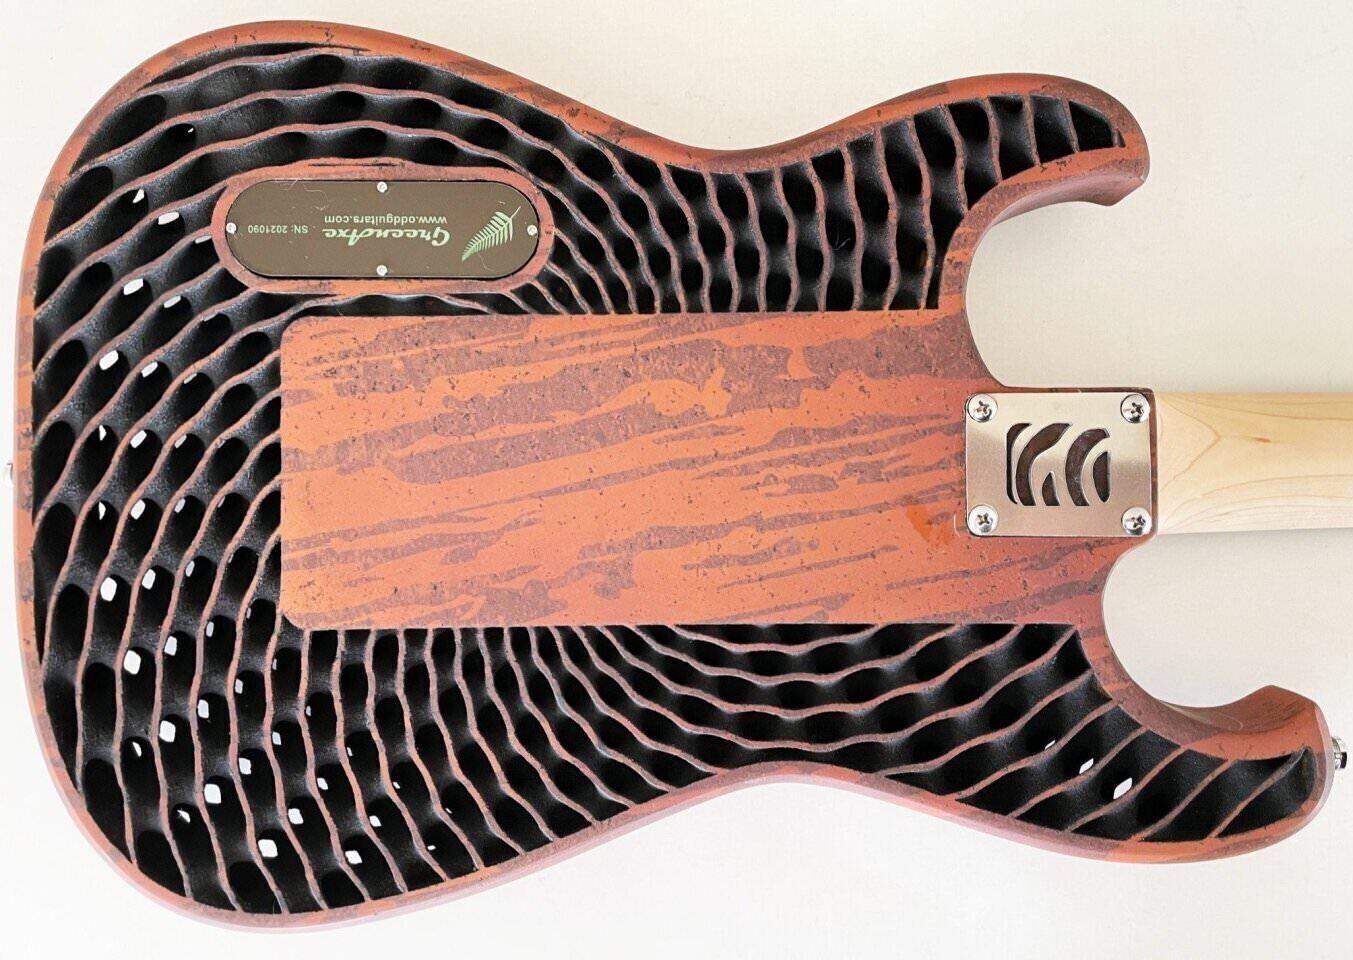 Greenaxe: напечатанная на 3D-принтере эко-гитара из опилок